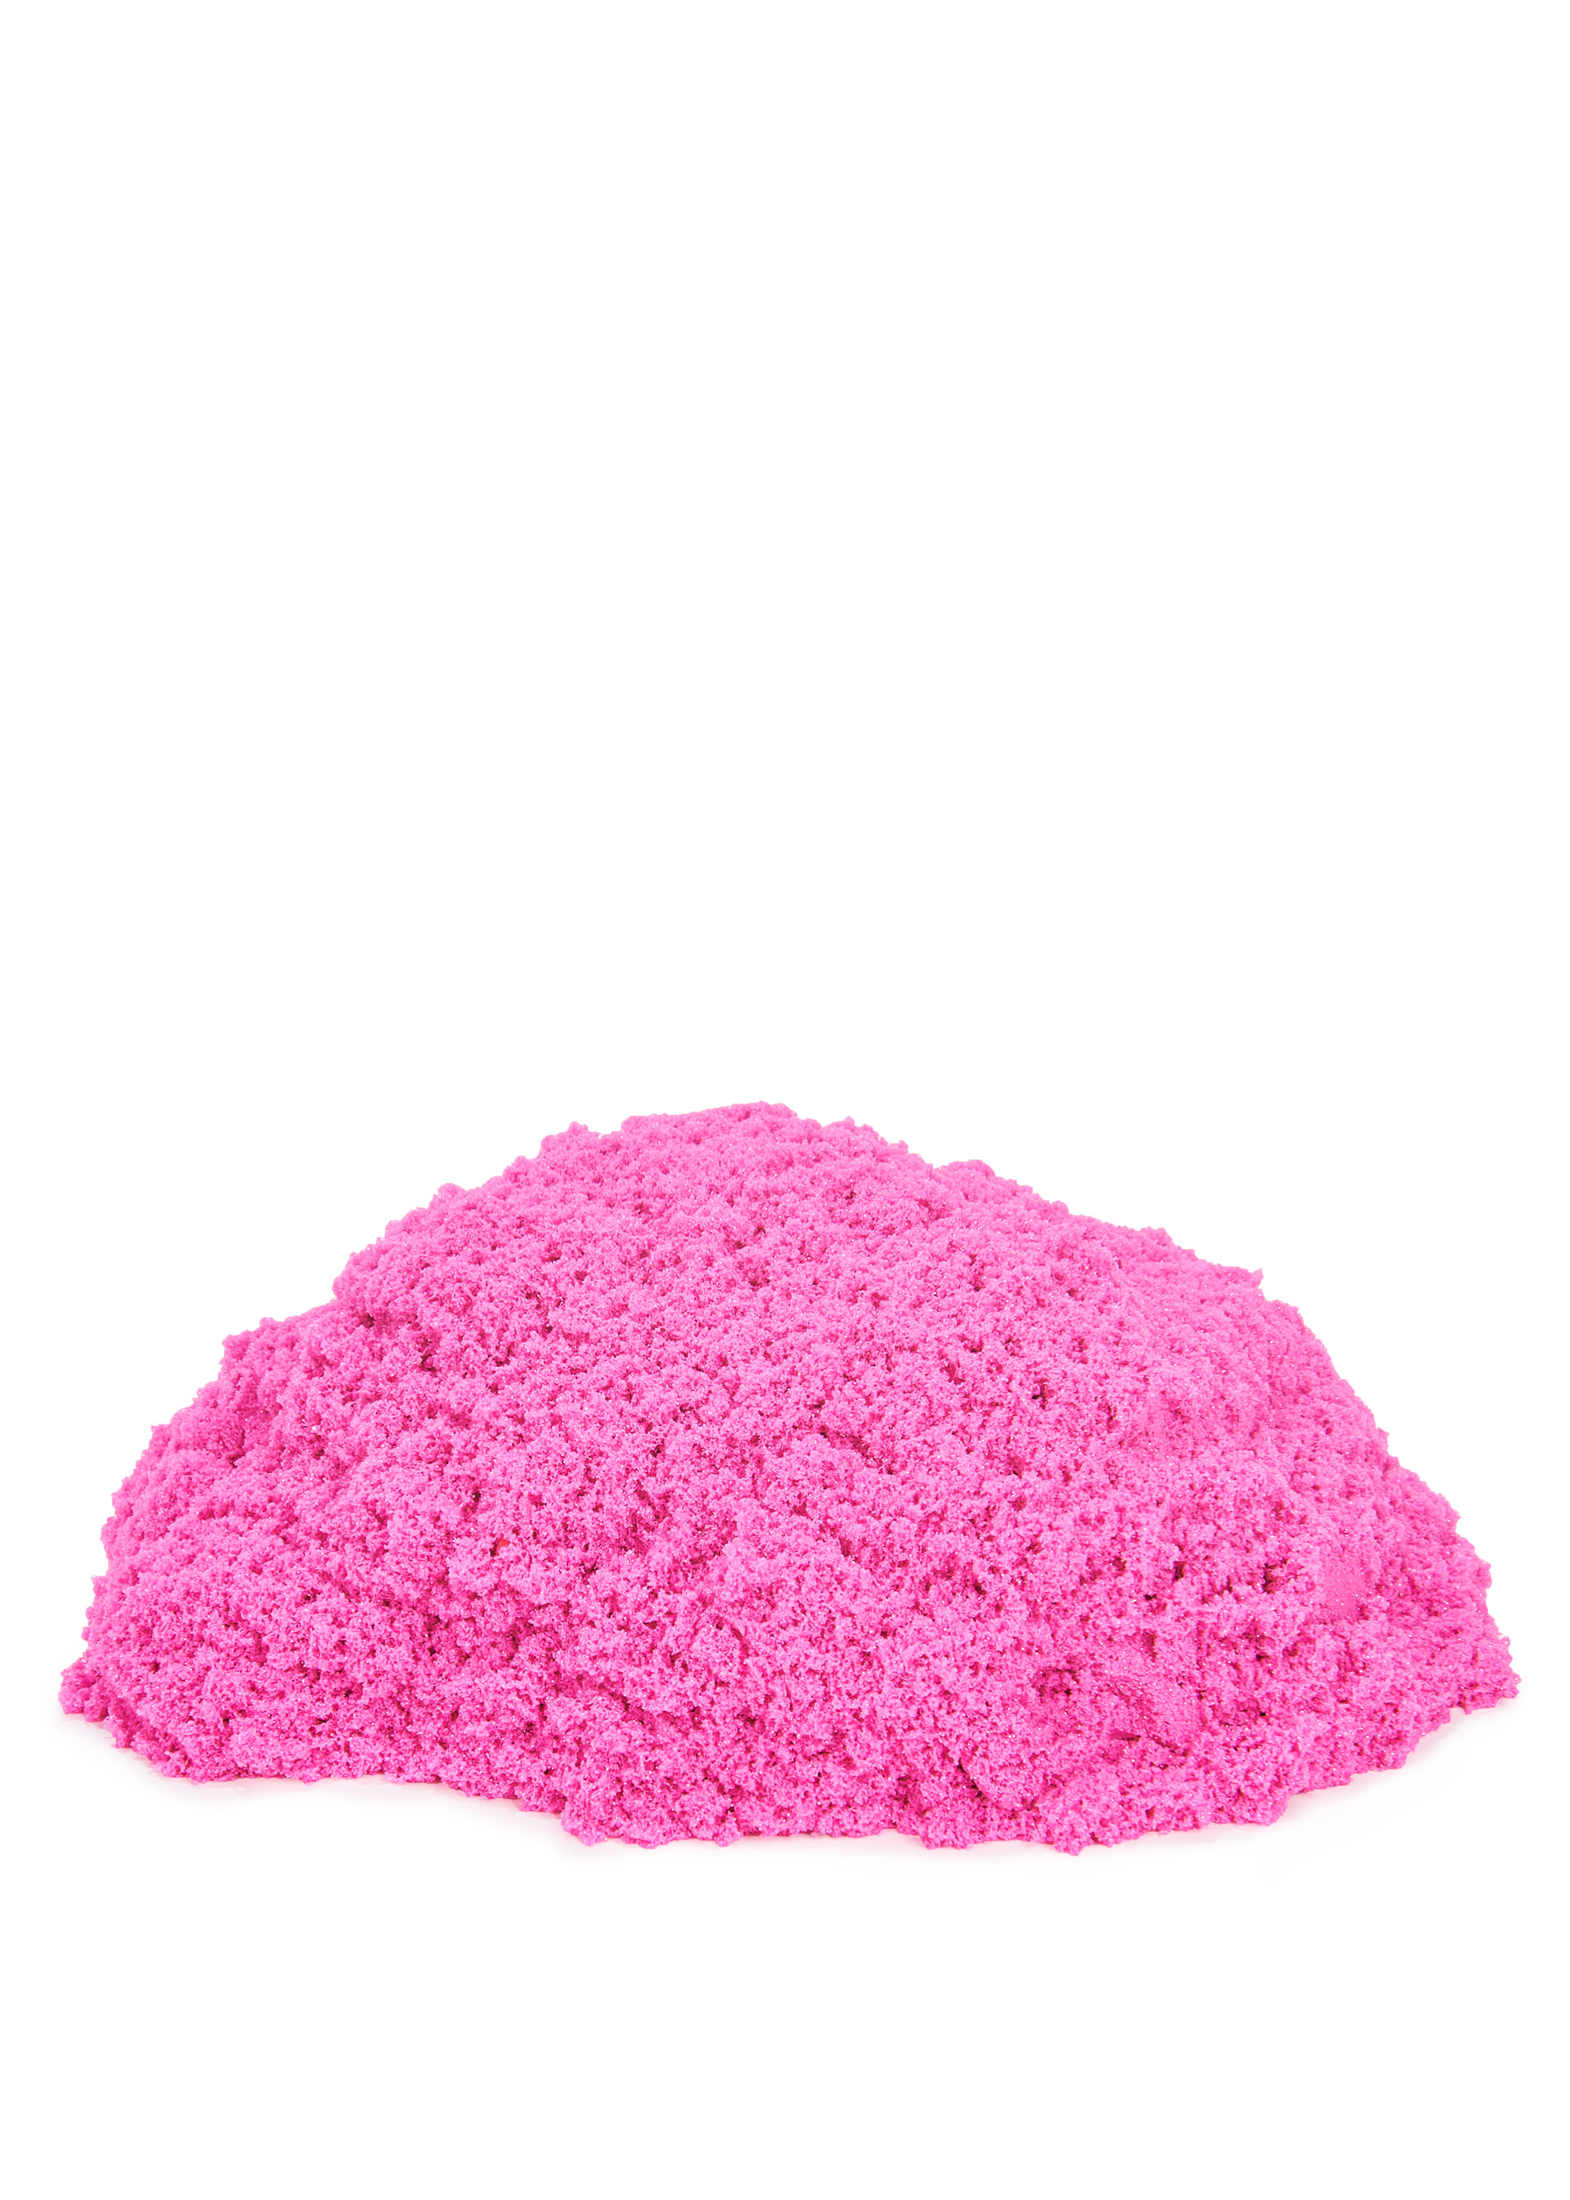 Kinetic Sand - Glitzer Sand Crystal Pink 907 g image number 1